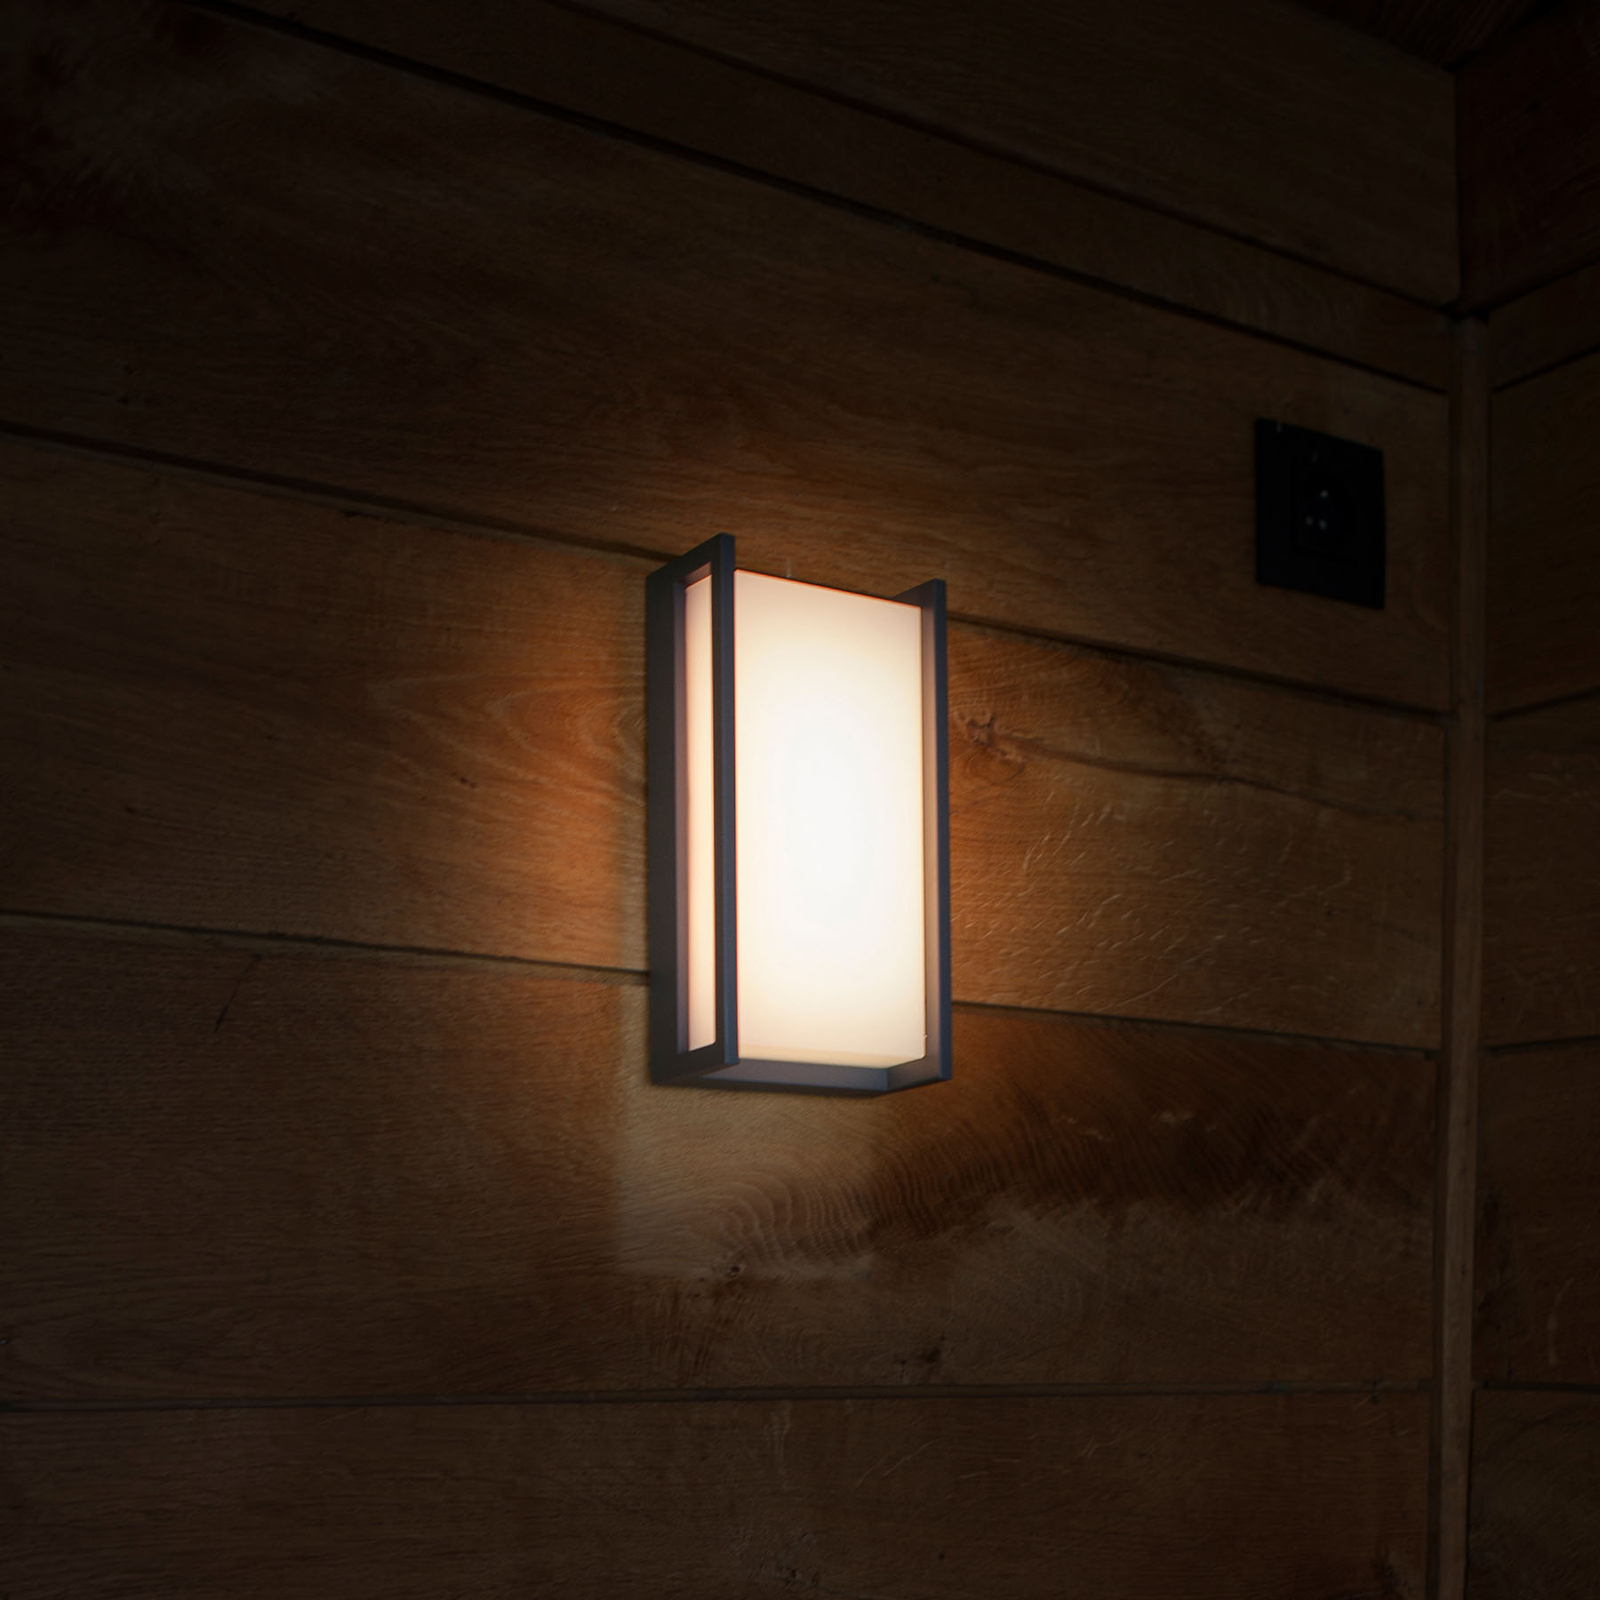 LED venkovní světlo Qubo, RGBW, inteligentní